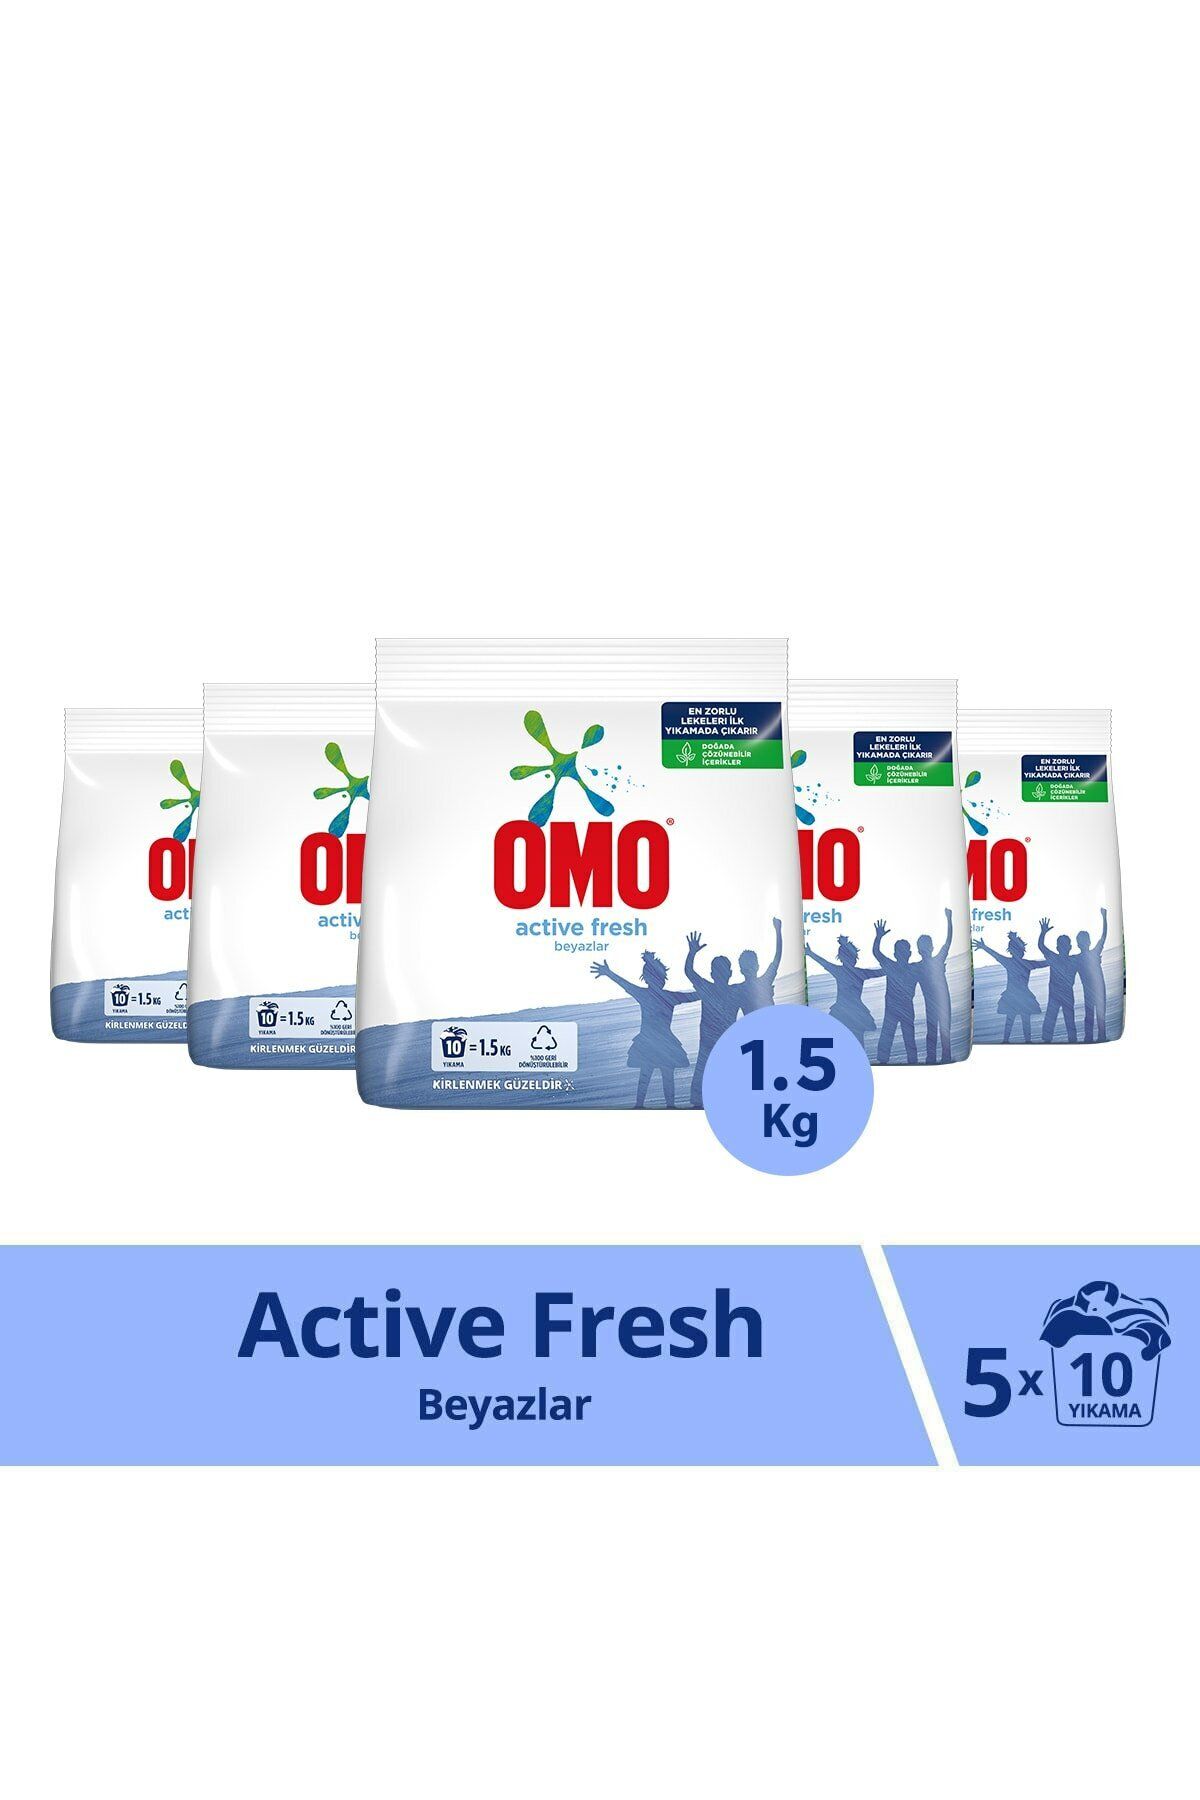 Omo Active Fresh Toz Çamaşır Deterjanı Beyazlar Için En Zorlu Lekeleri Çıkarır 1.5 Kg 5 Adet